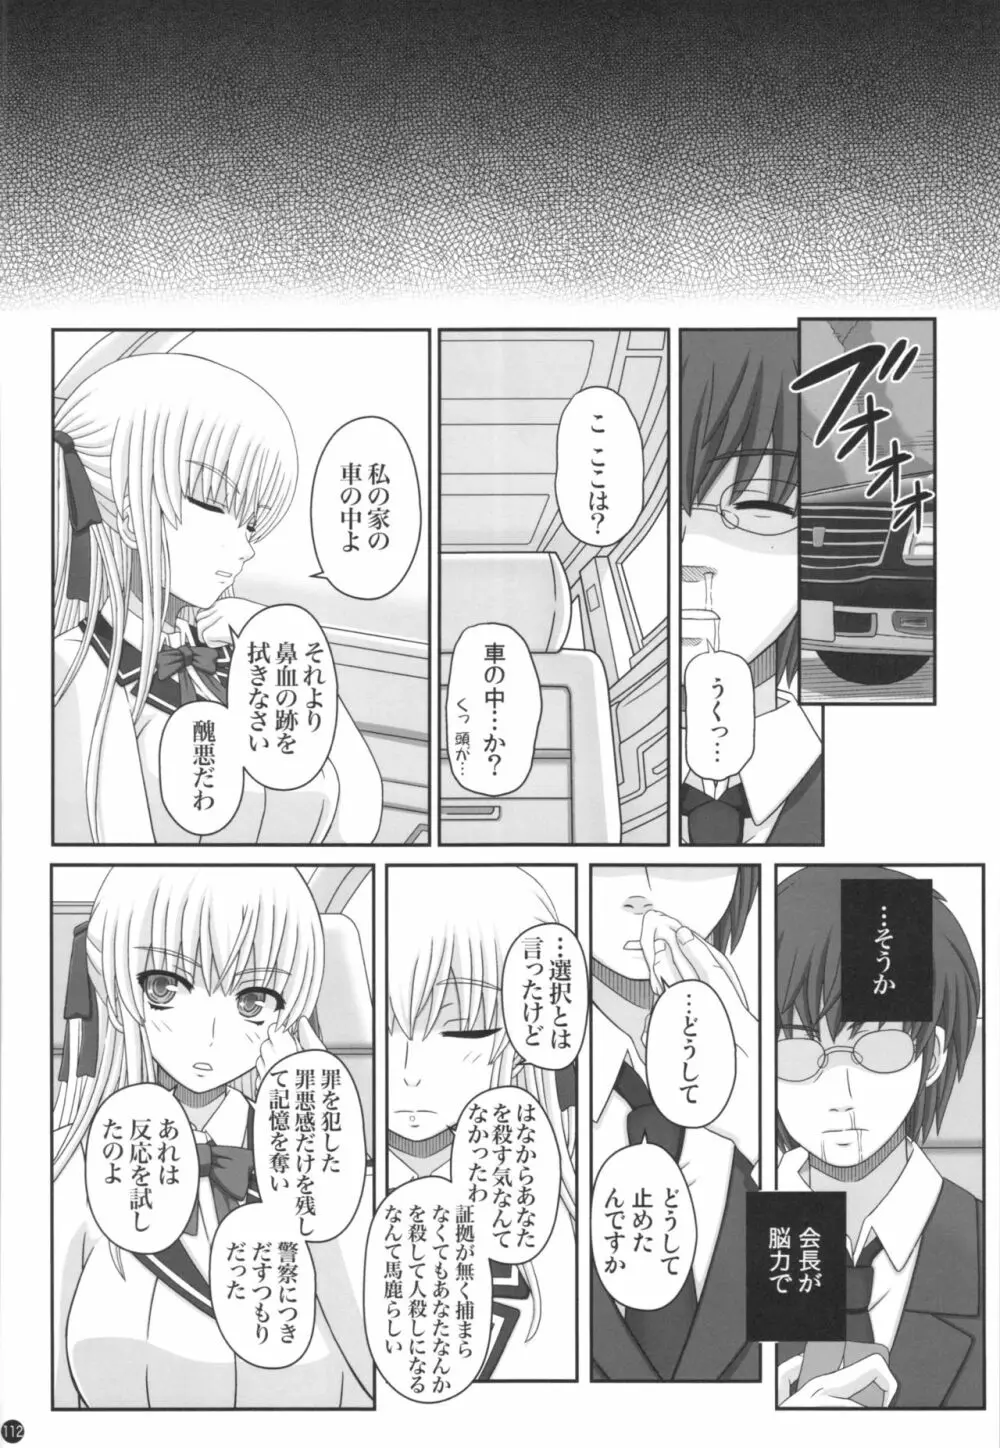 Katashibu 40-shuu 112ページ